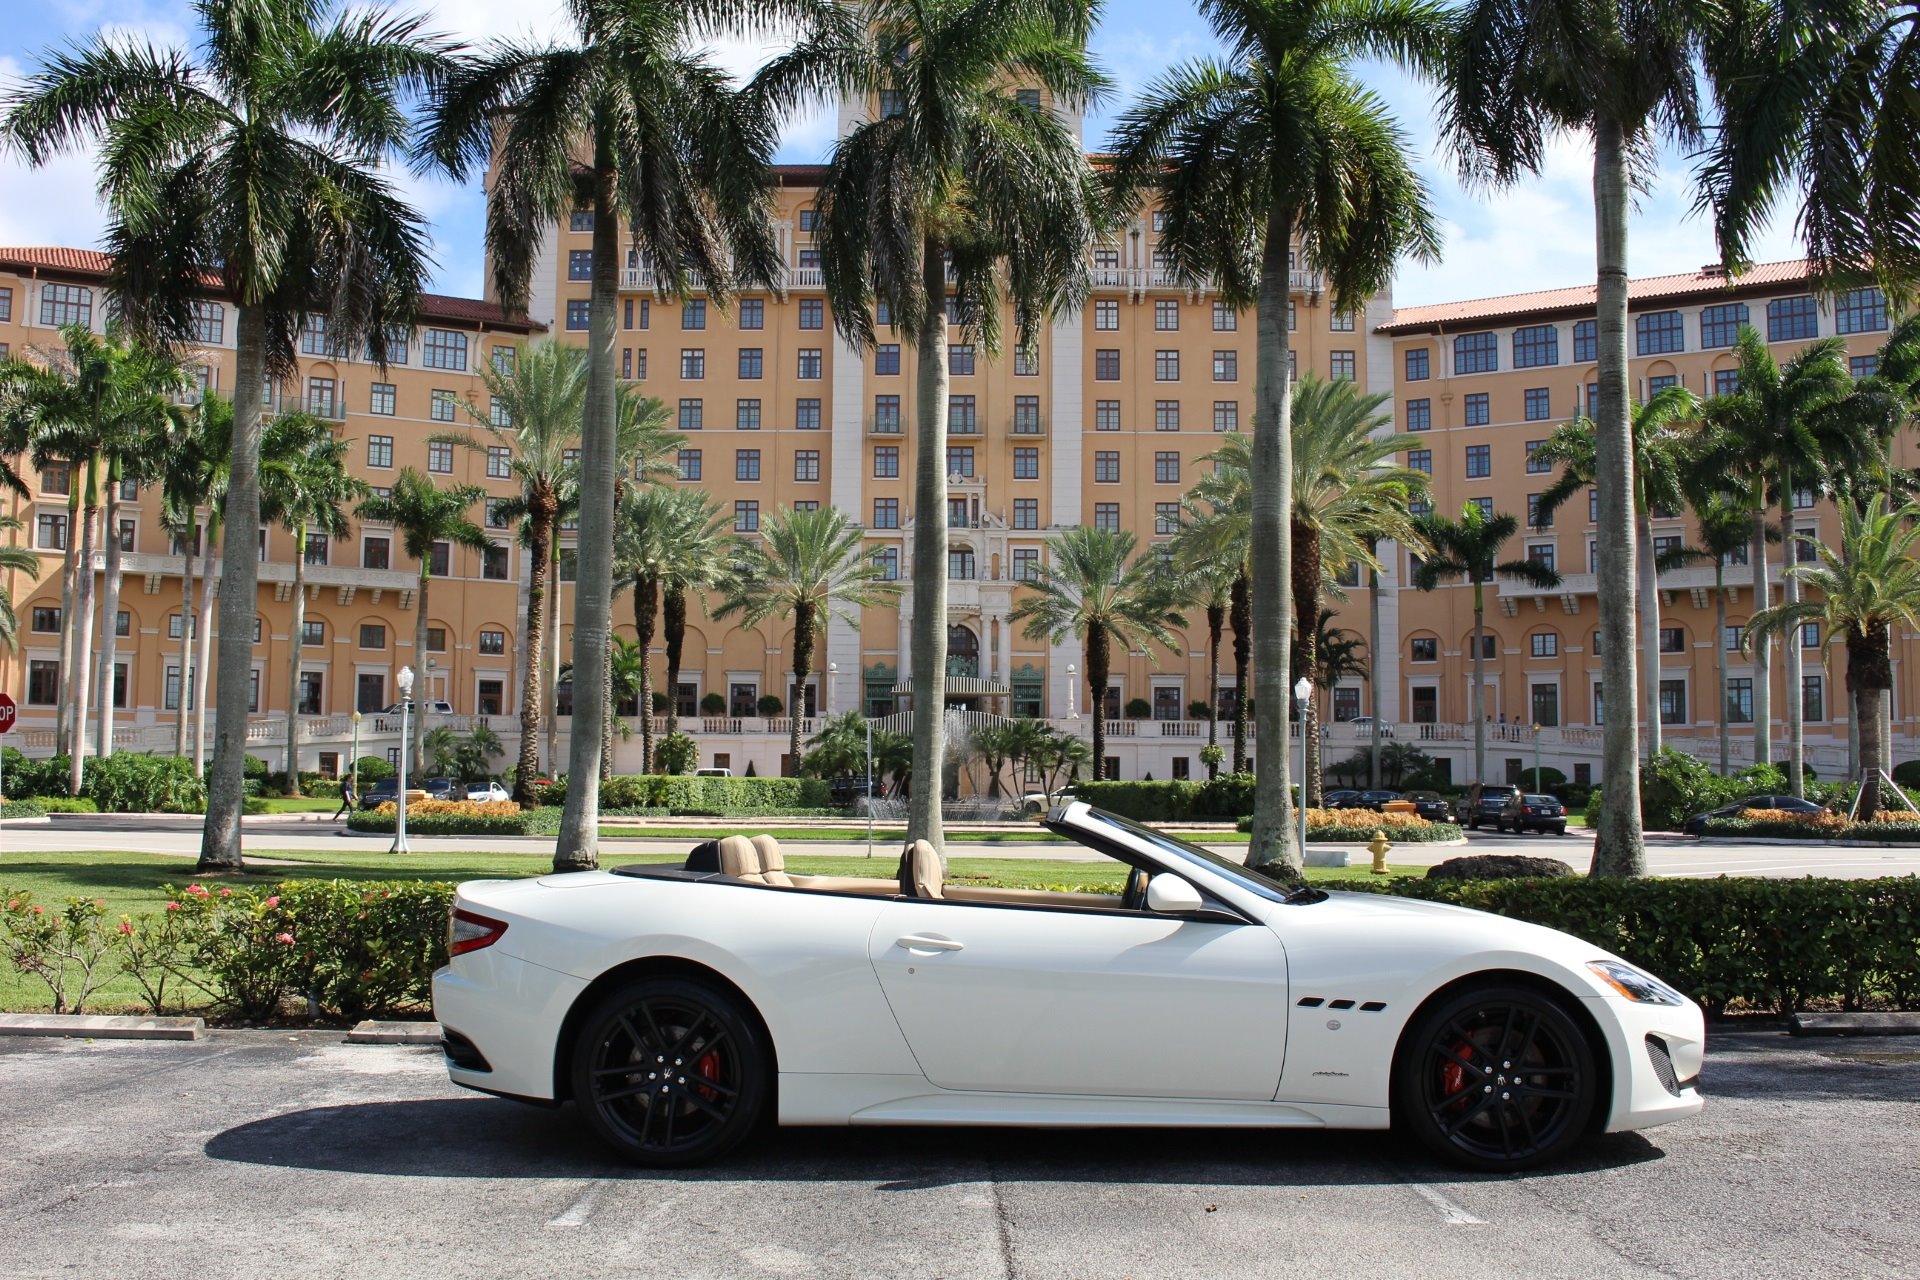 Used 2015 Maserati GranTurismo MC Centennial for sale Sold at The Gables Sports Cars in Miami FL 33146 2